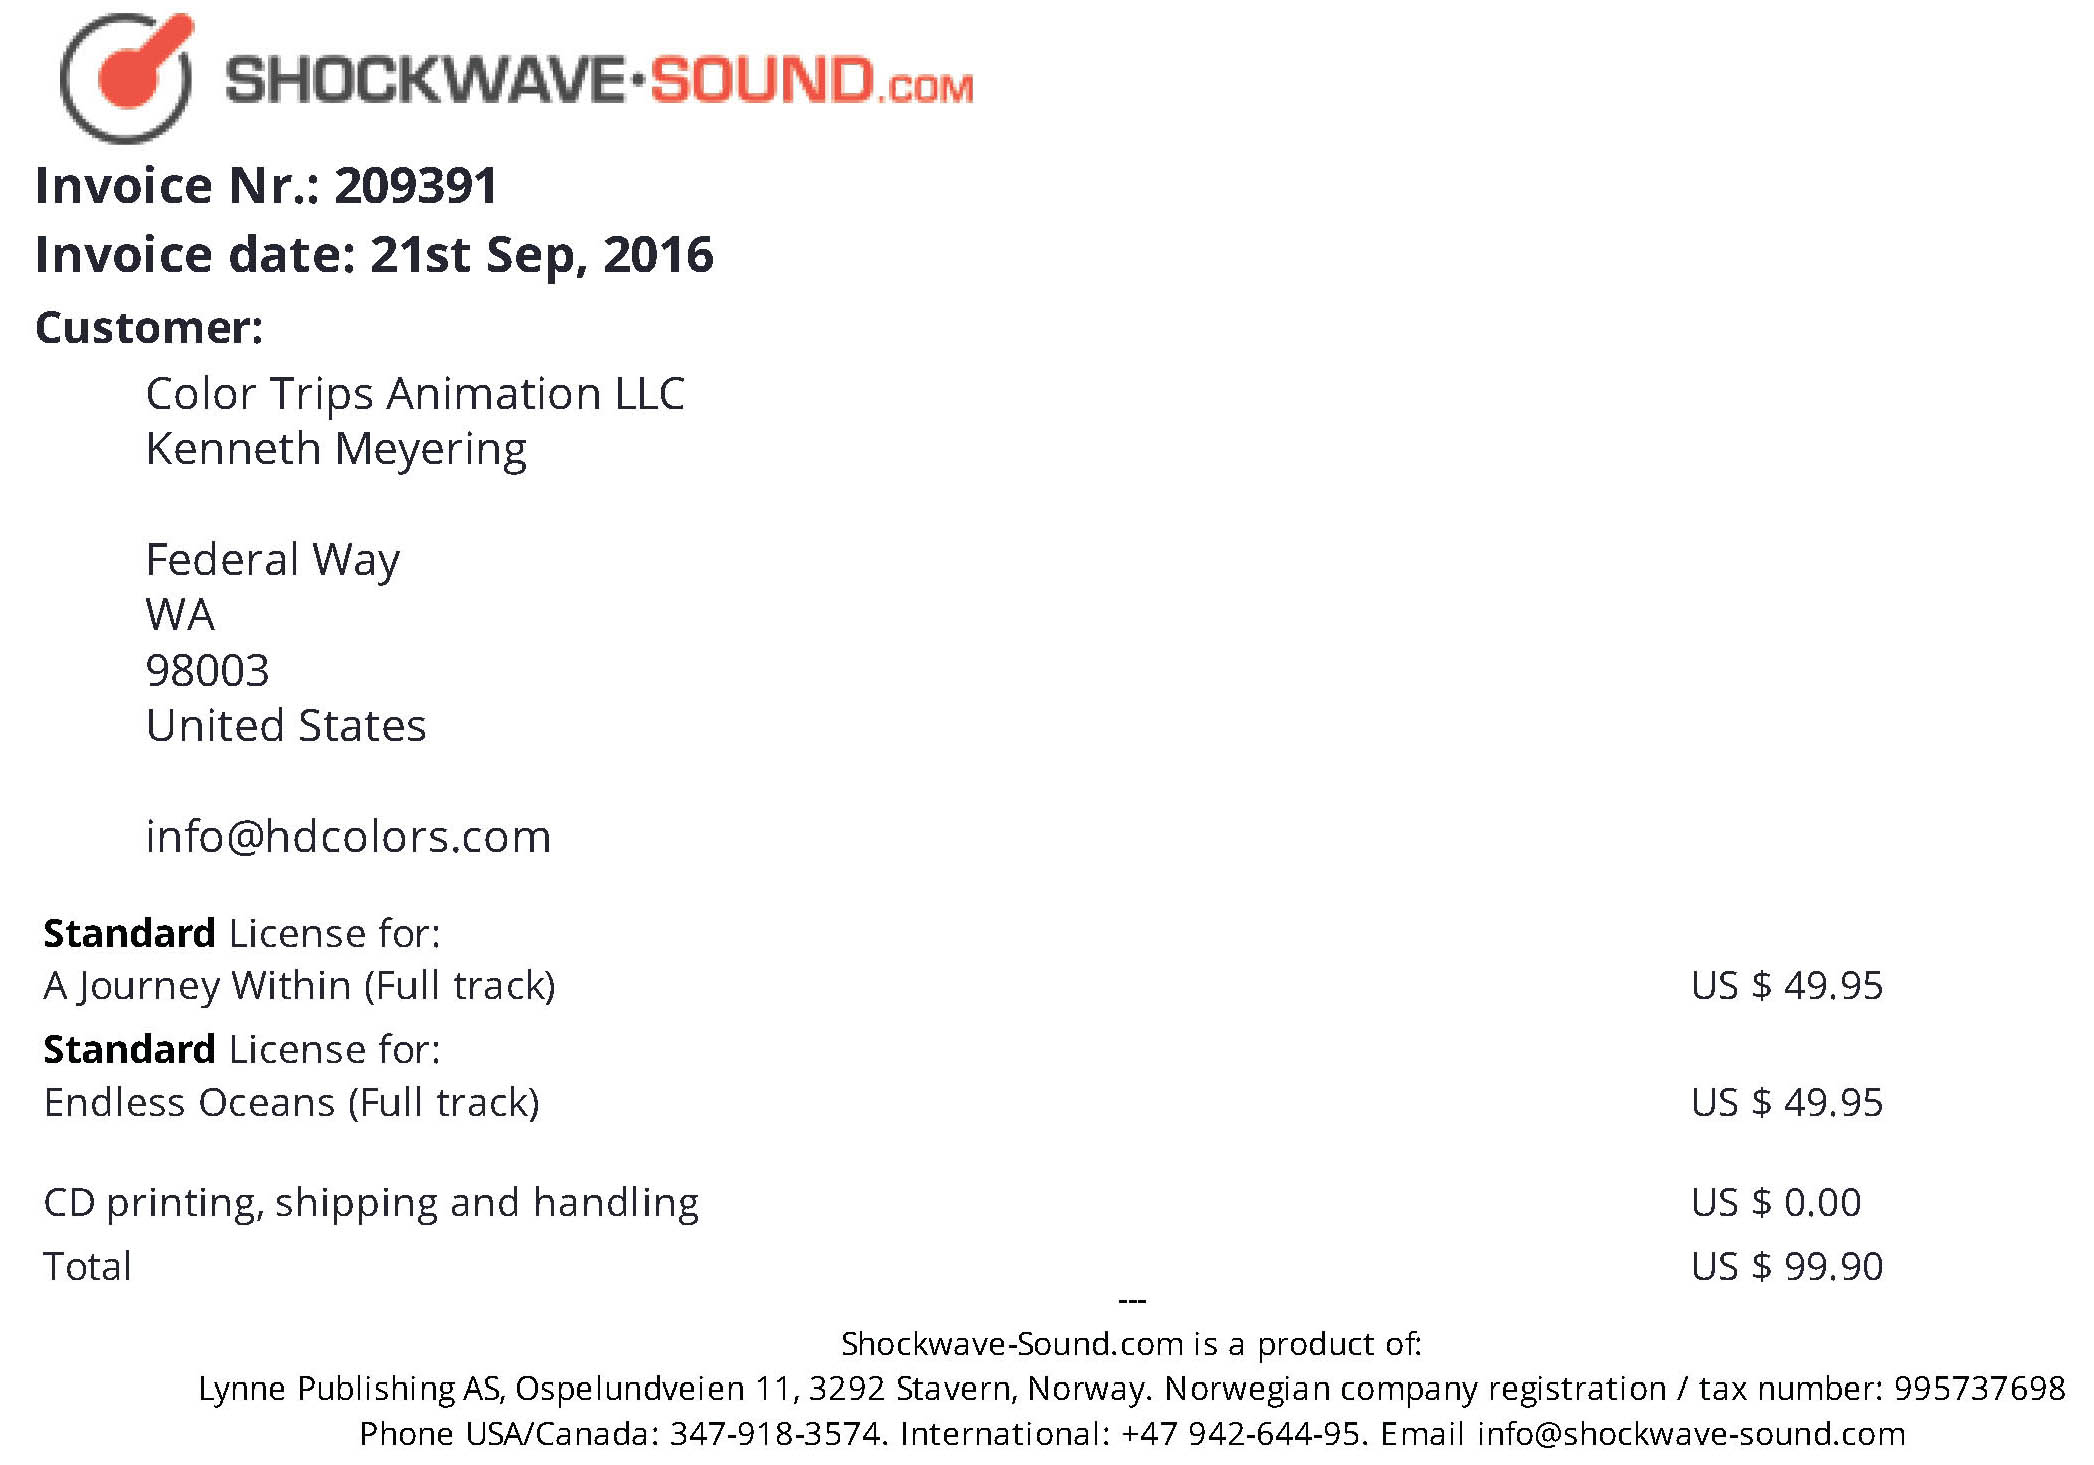 Ken Meyering's Shockwave Sound Licensing